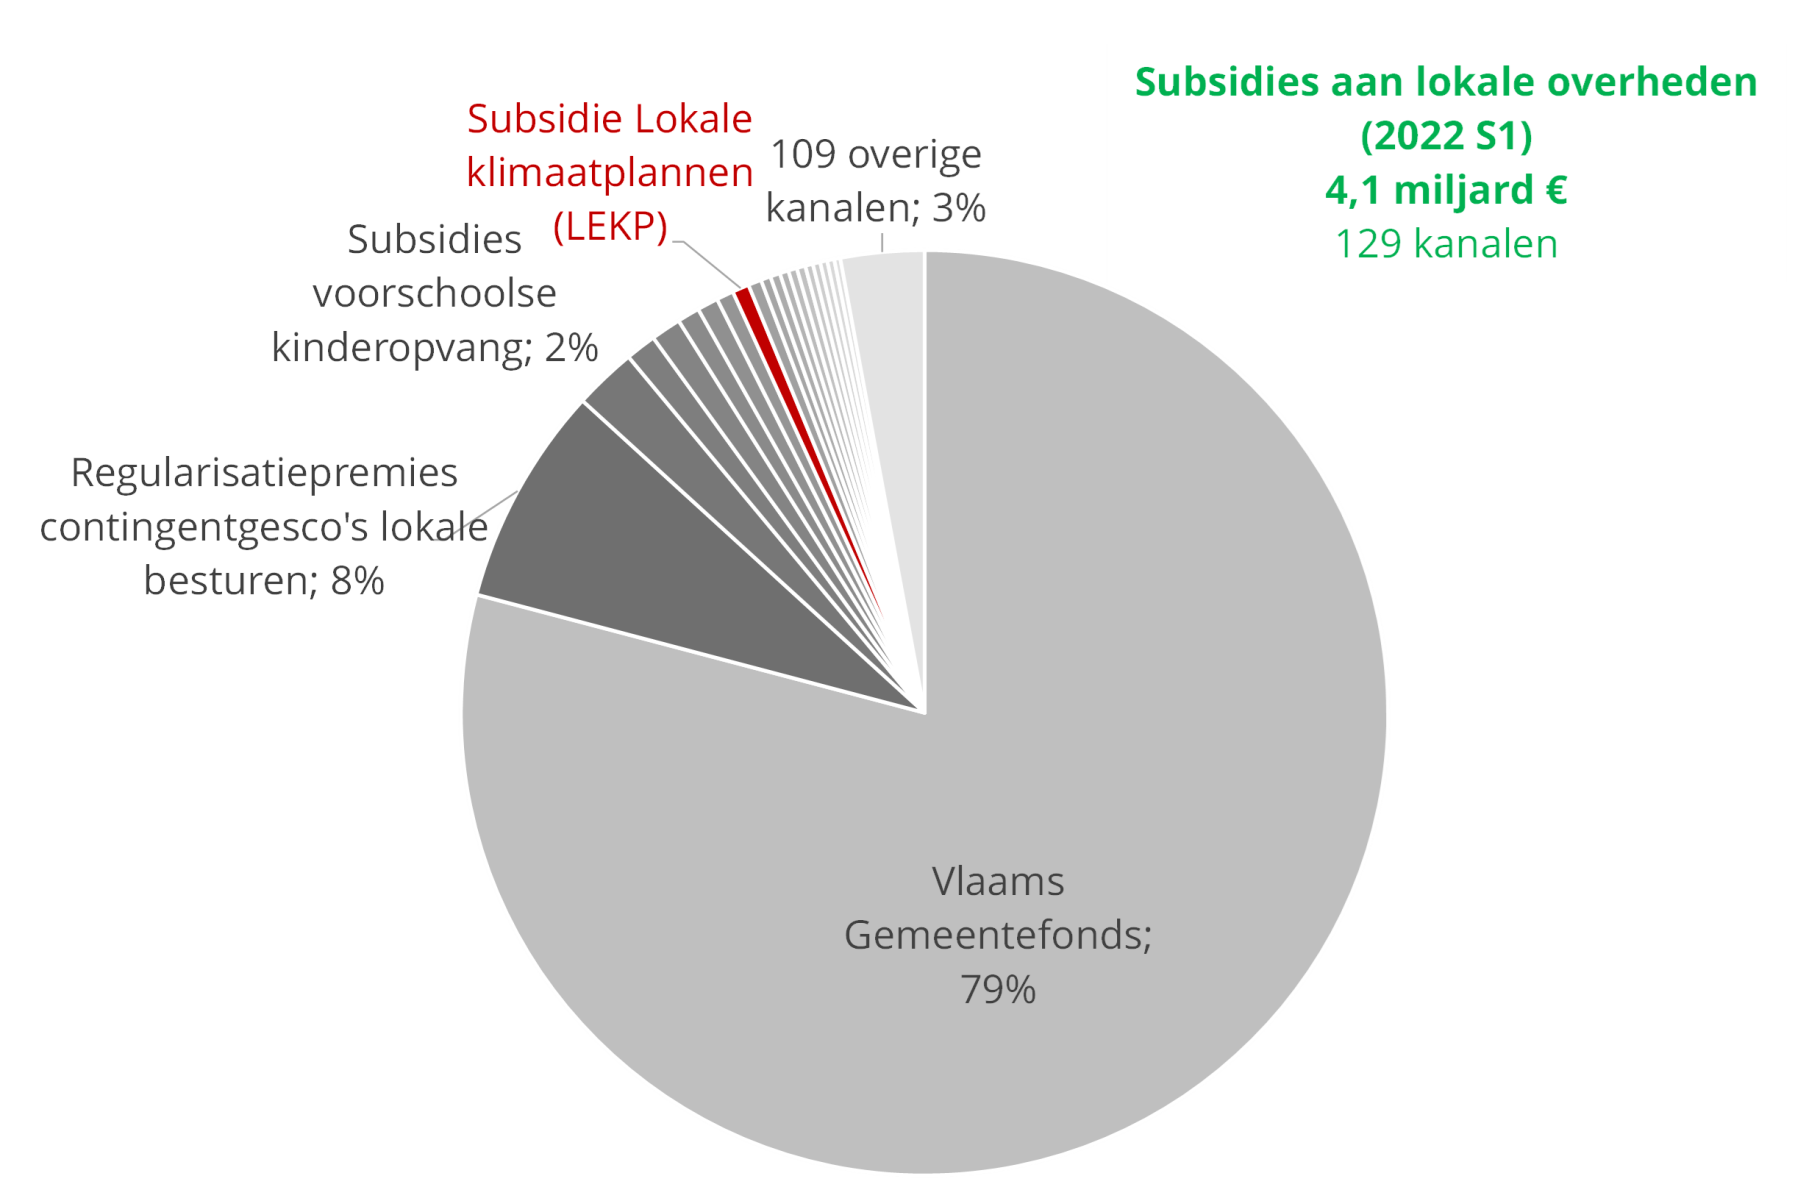 97% van Vlaamse subsidies aan gemeenten gaan via 20 kanalen, 3% gaat via 109 kanalen (2022 S1)